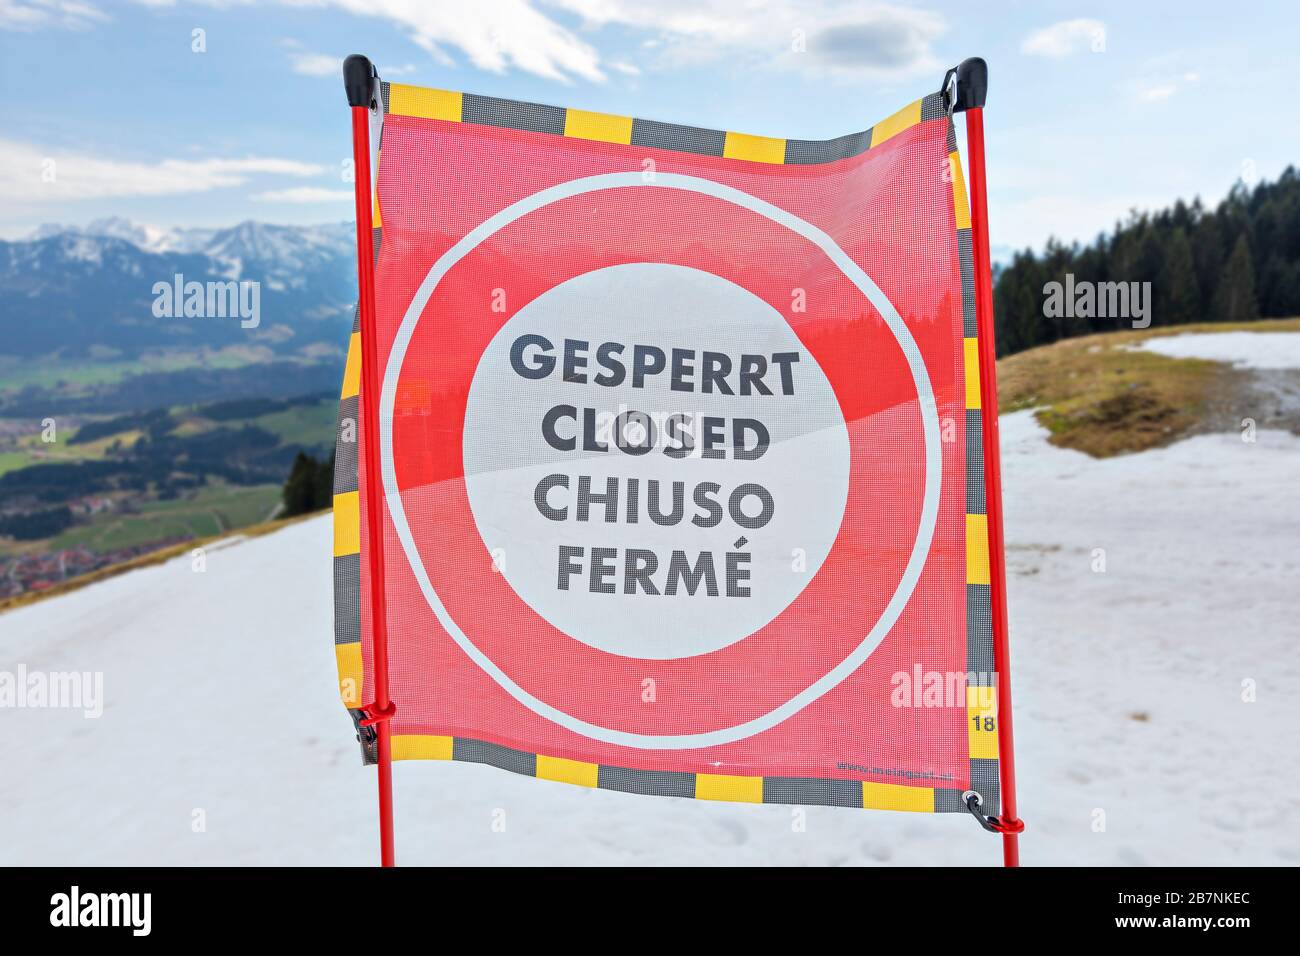 Signe fermé dans le domaine skiable abandonné de Bolsterlang près d'Oberstdorf en raison de l'épidémie du virus Corona. Alpes d'Allgäu, Bavière, Allemagne. Mise au point sélective Banque D'Images